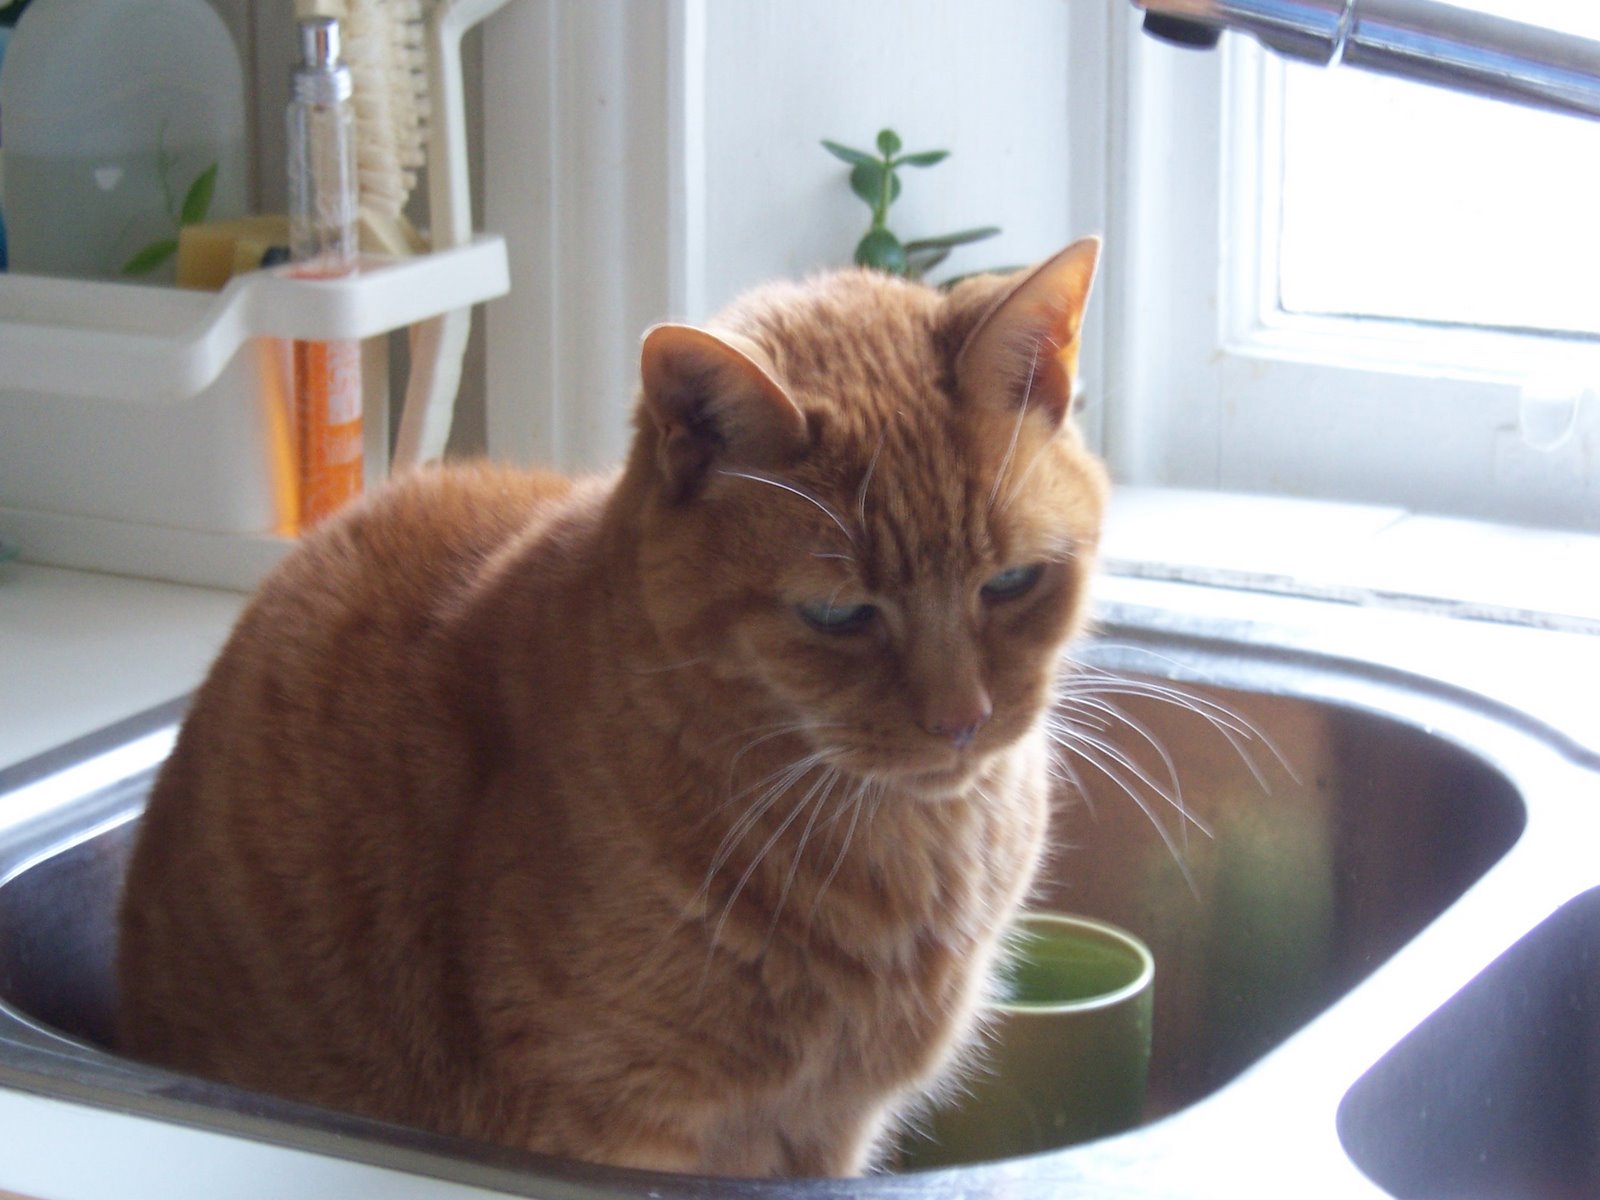 [Cat+in+sink+2.5.06+002.jpg]